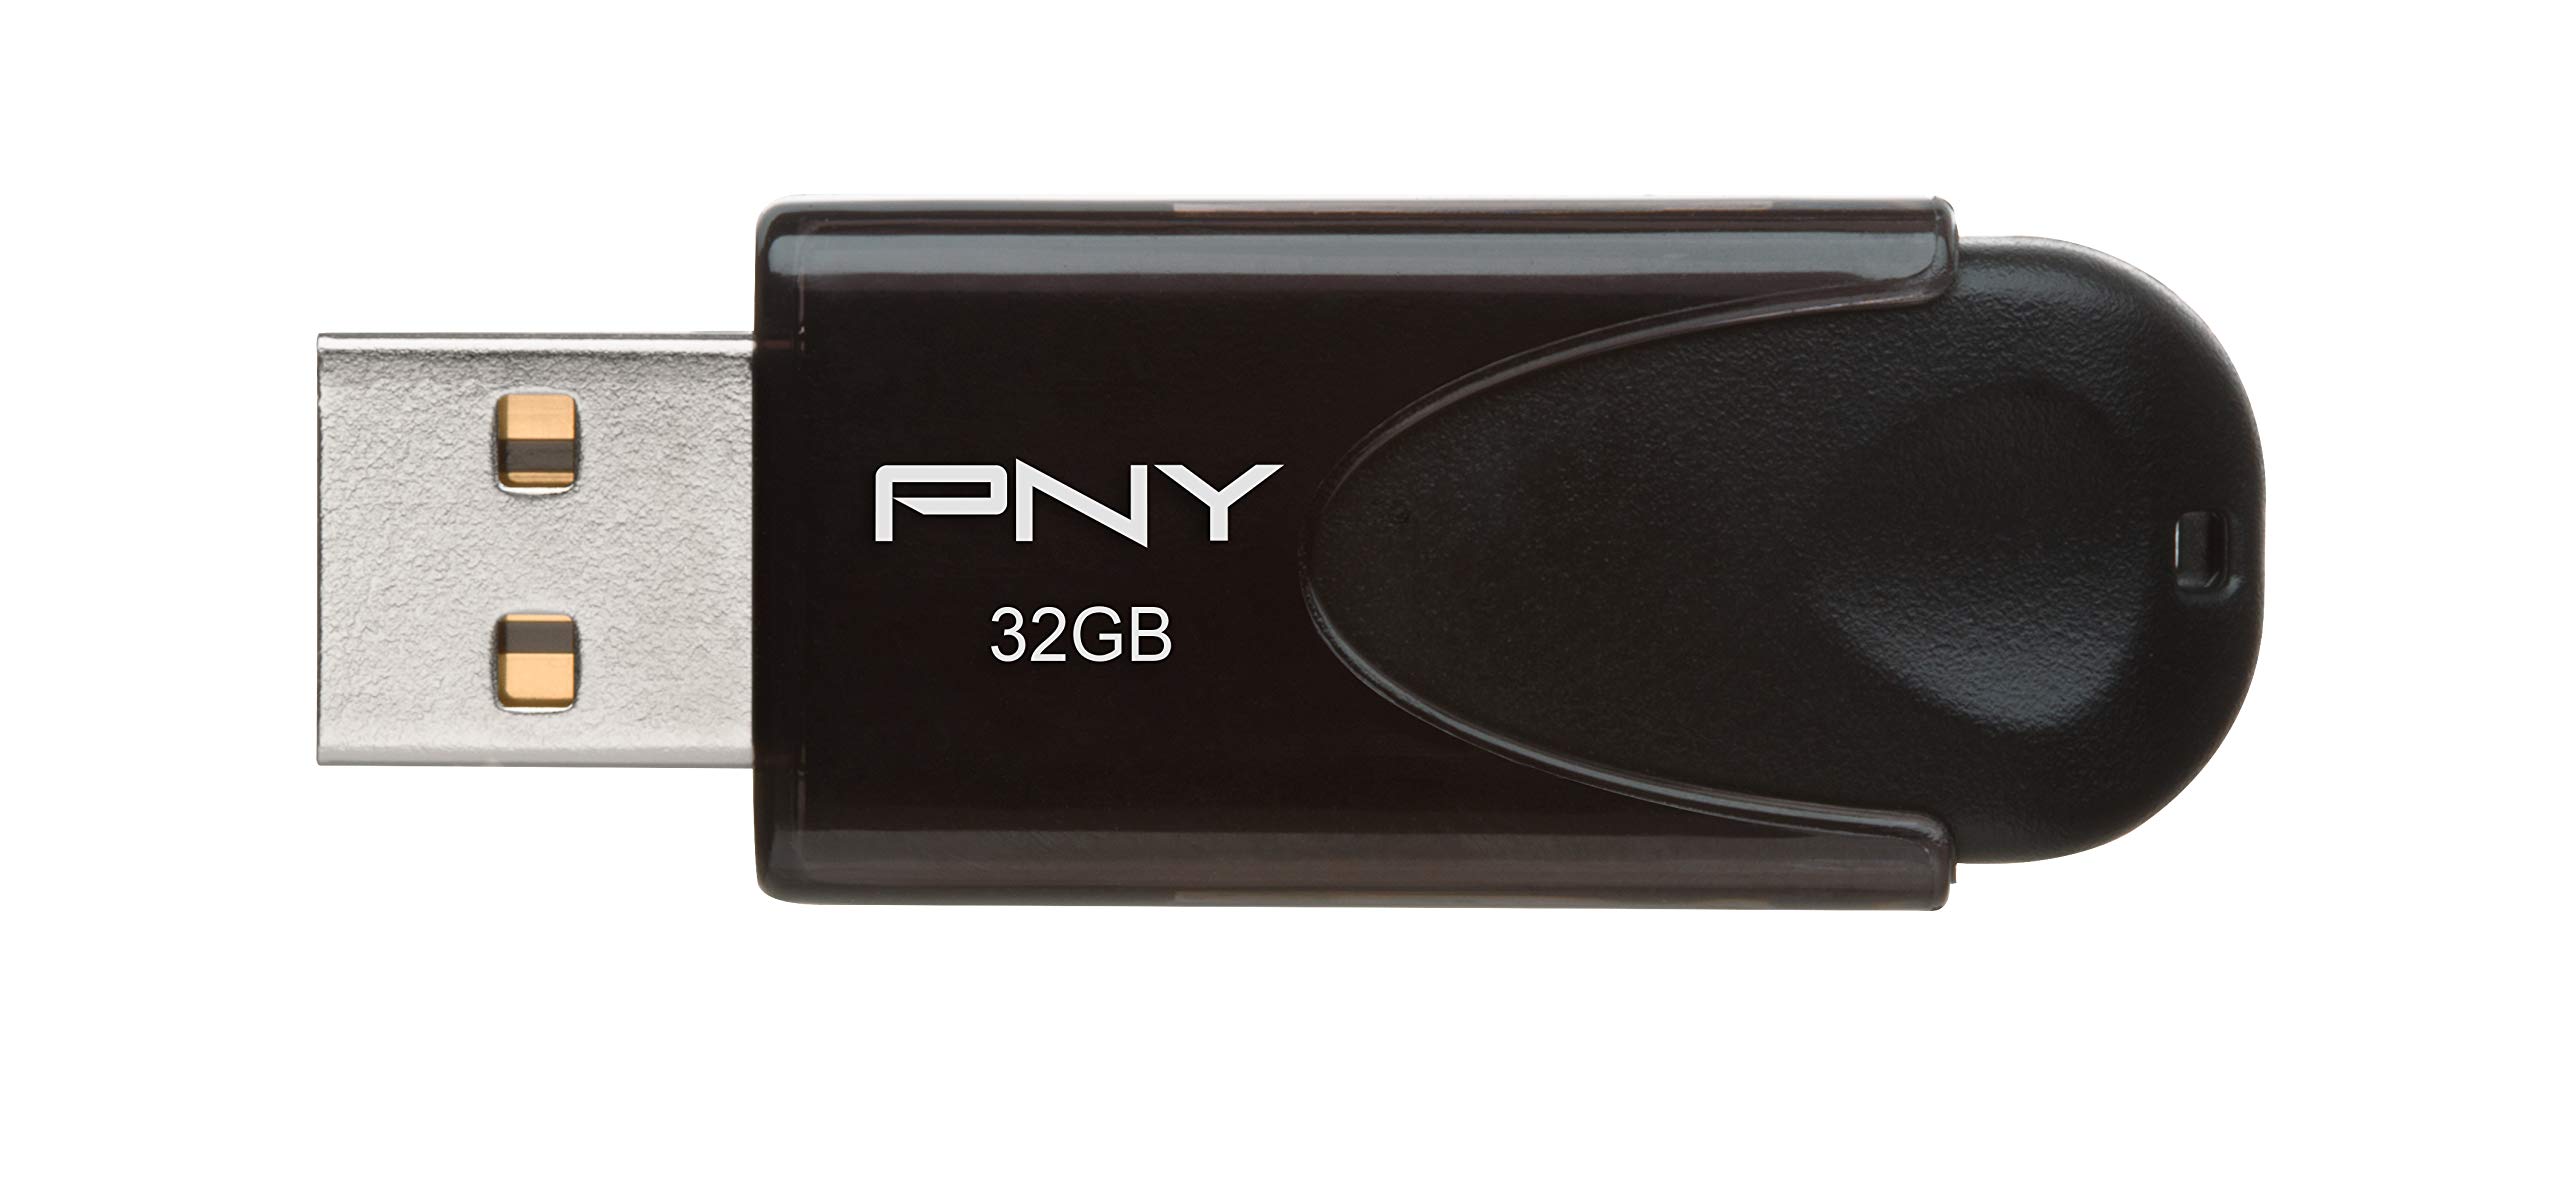 PNY 32GB Attaché 4 USB 2.0 Flash Drive, Black